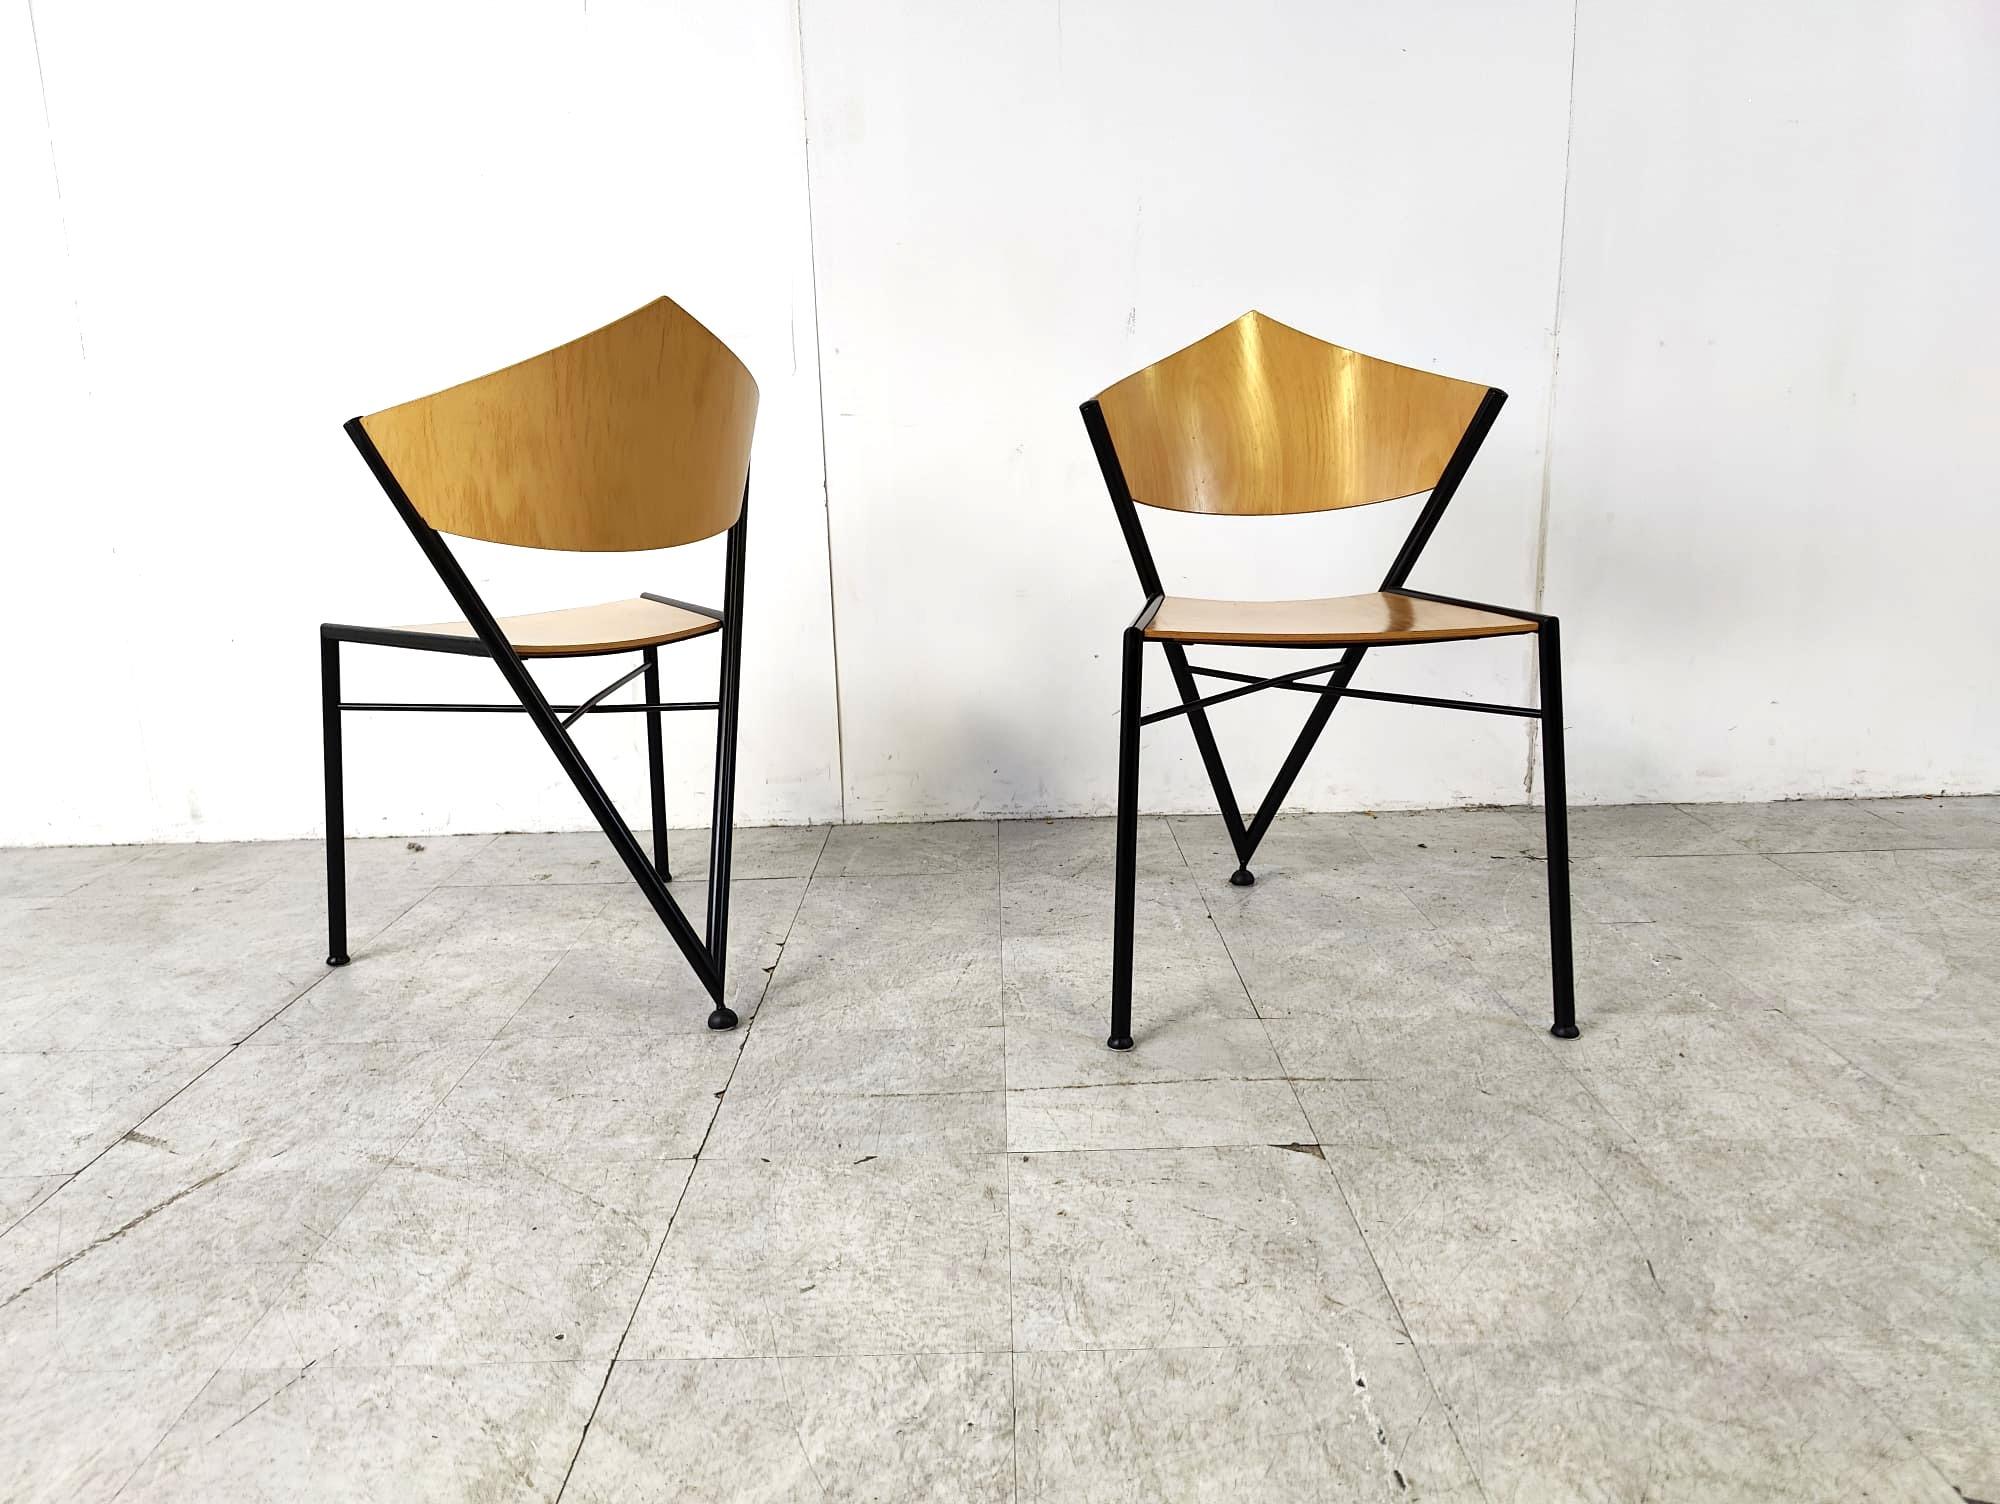 Chaises de salle à manger géométriques post modern design en contreplaqué et métal noir.

Les chaises sont empilables, ce qui est très pratique.

Design/One.

très bonne condition

Années 1980 - Allemagne

Dimensions :
Hauteur : 96 cm
Largeur : 48